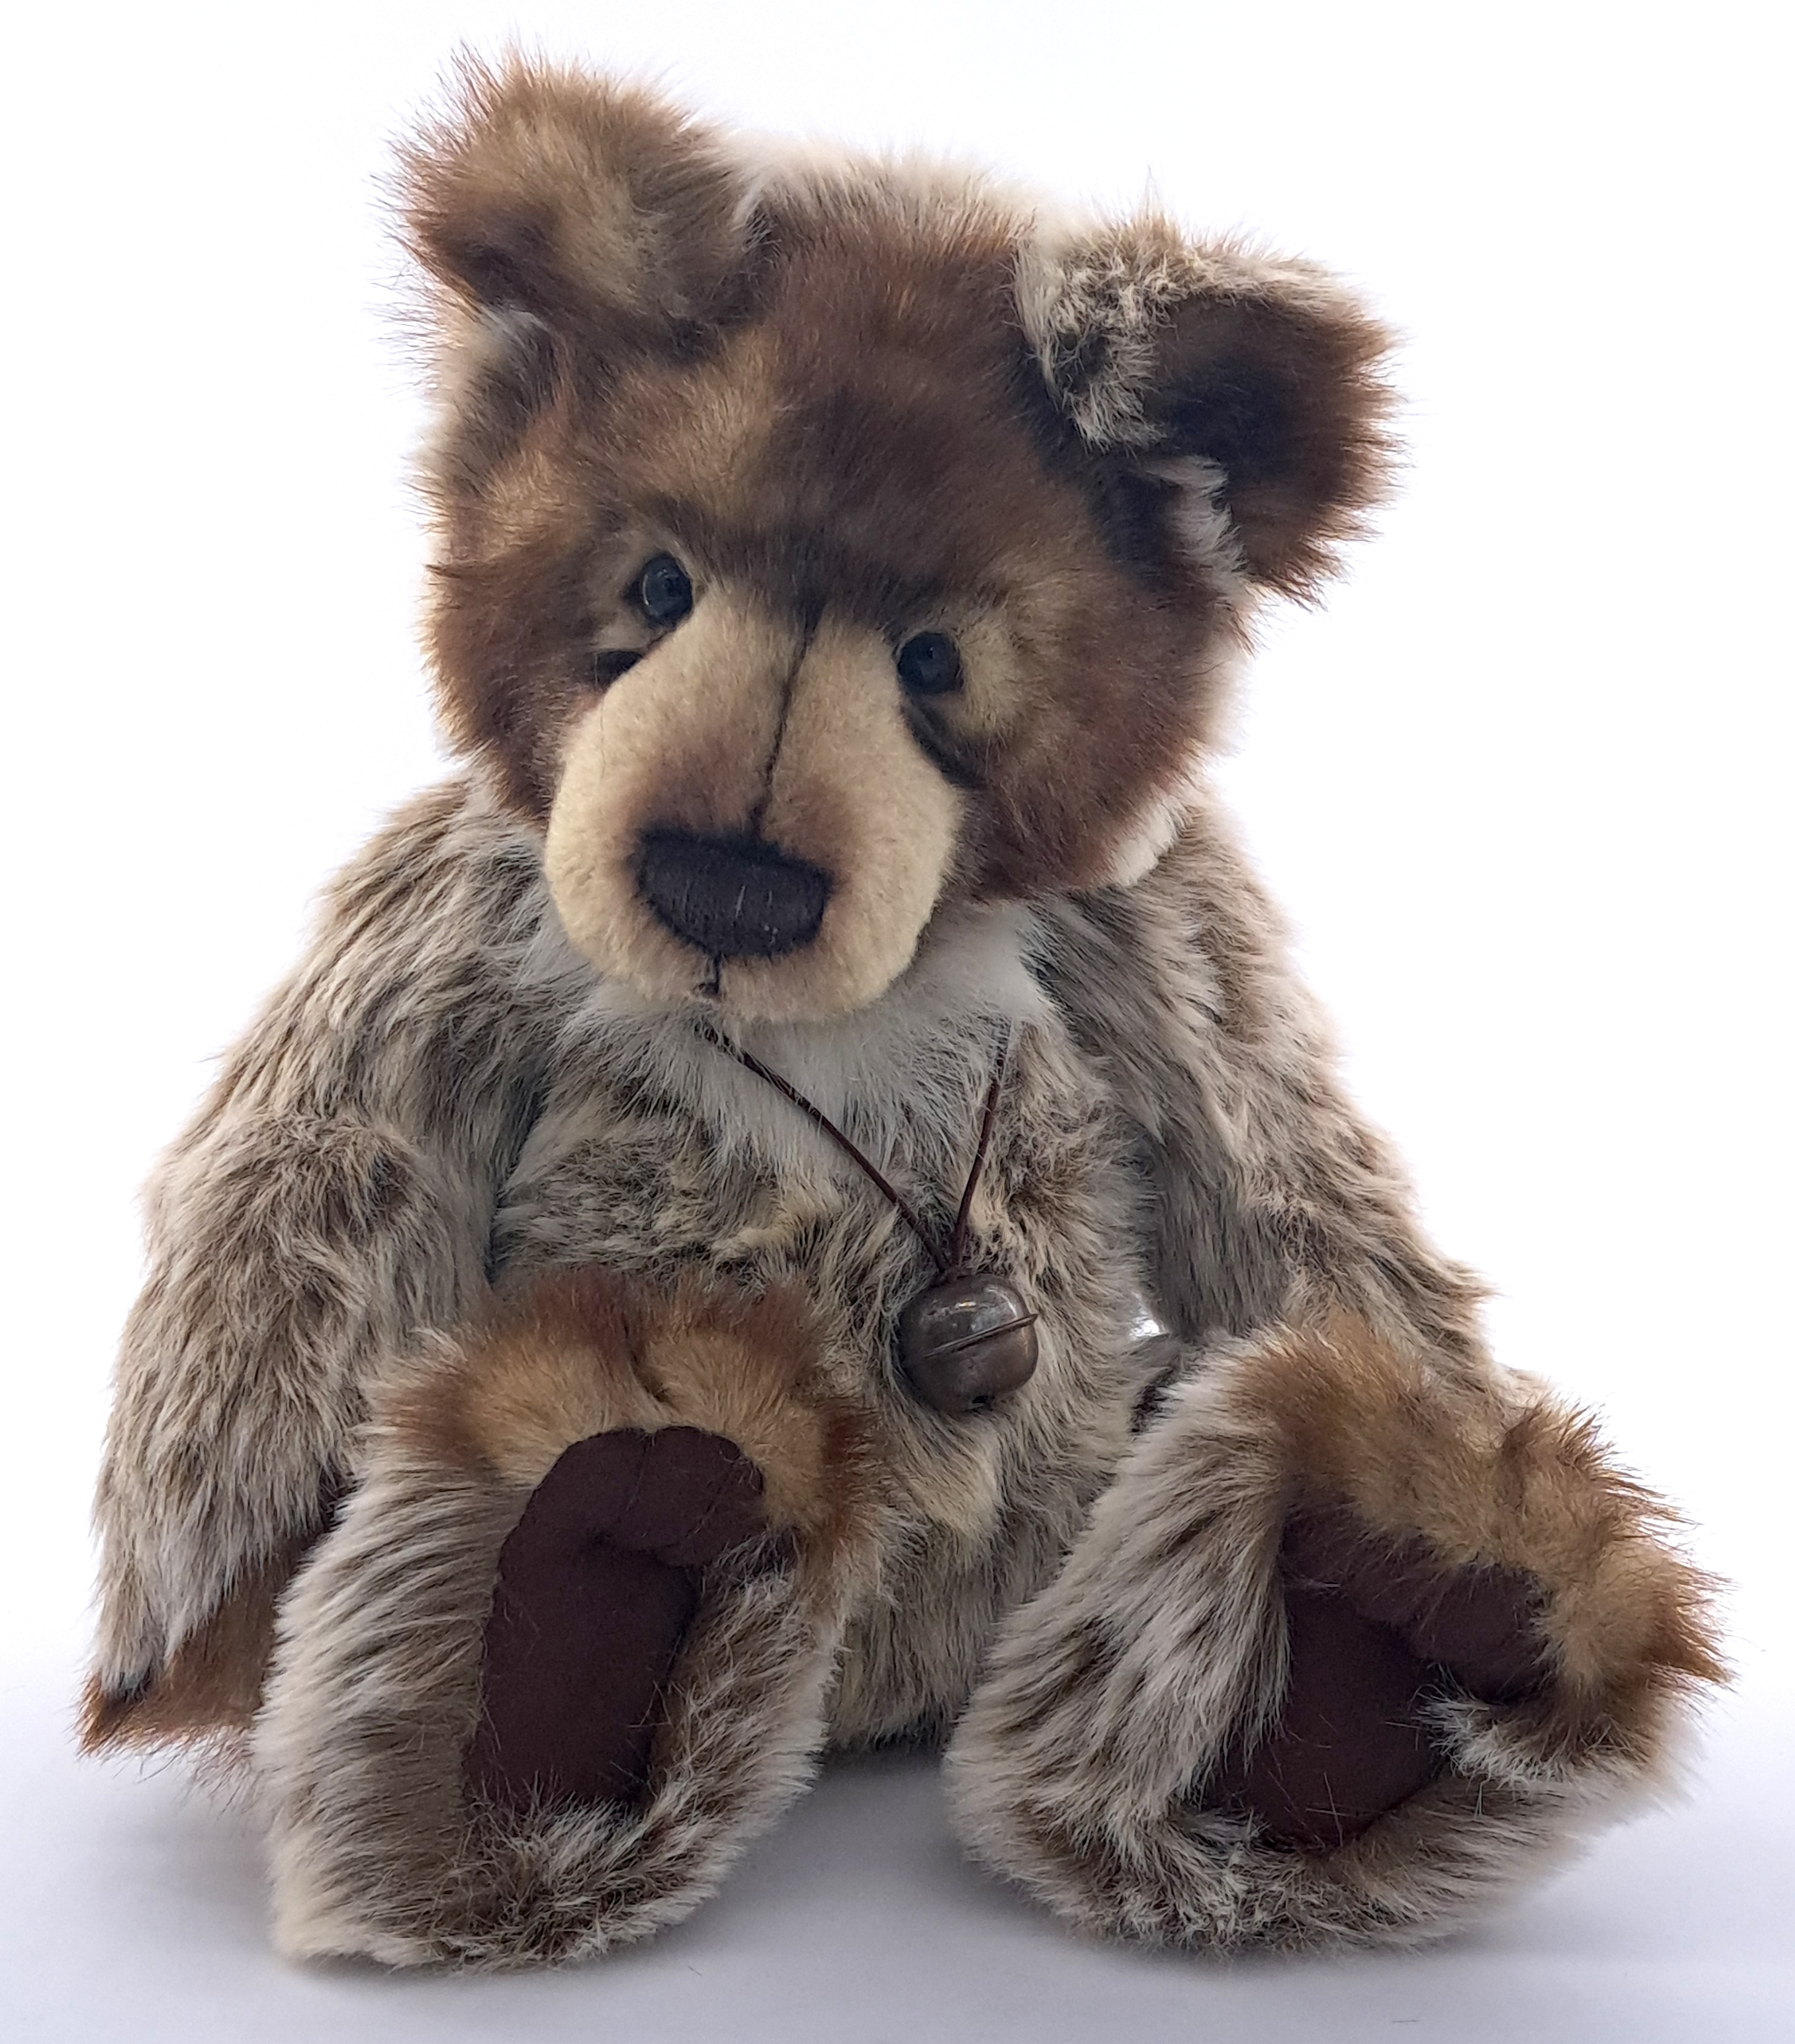 Charlie Bears original Diesel teddy bear